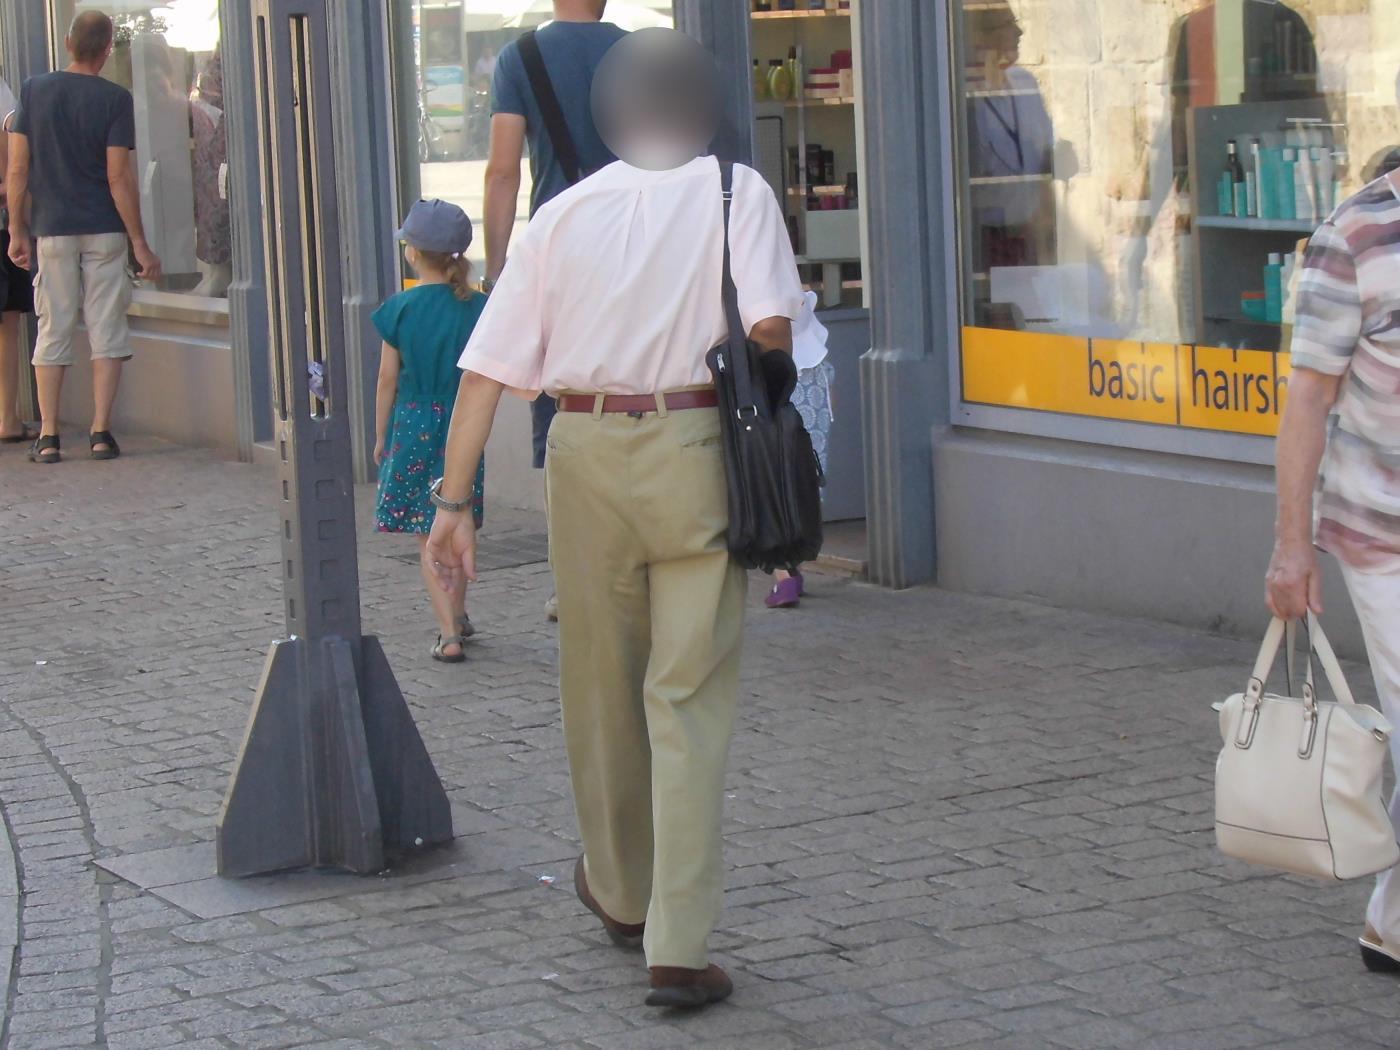 Jehovas Zeugen in Speyer: Spinne sucht Fliegen